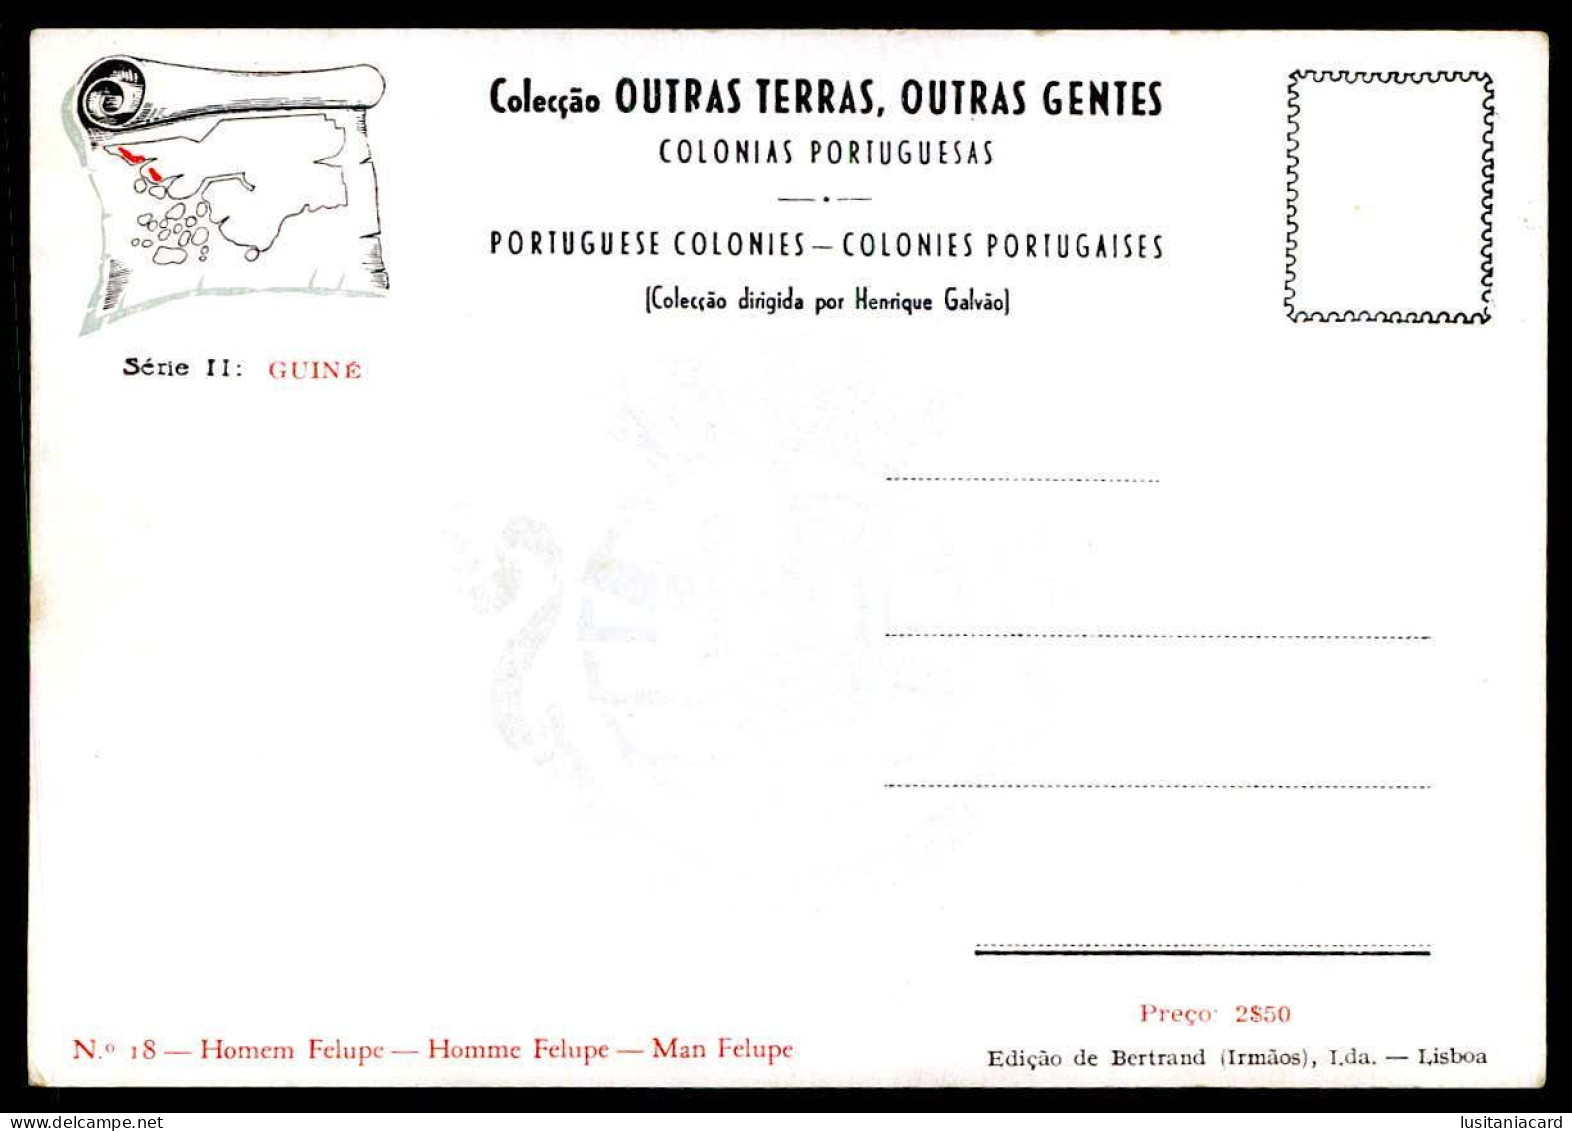 GUINÉ-BISSAU-Colecção Outras Terras, Outras Gentes.(18 POSTAIS)(Ed. Bertrand(Irms.Lda Nº 1 a 18)carte postale